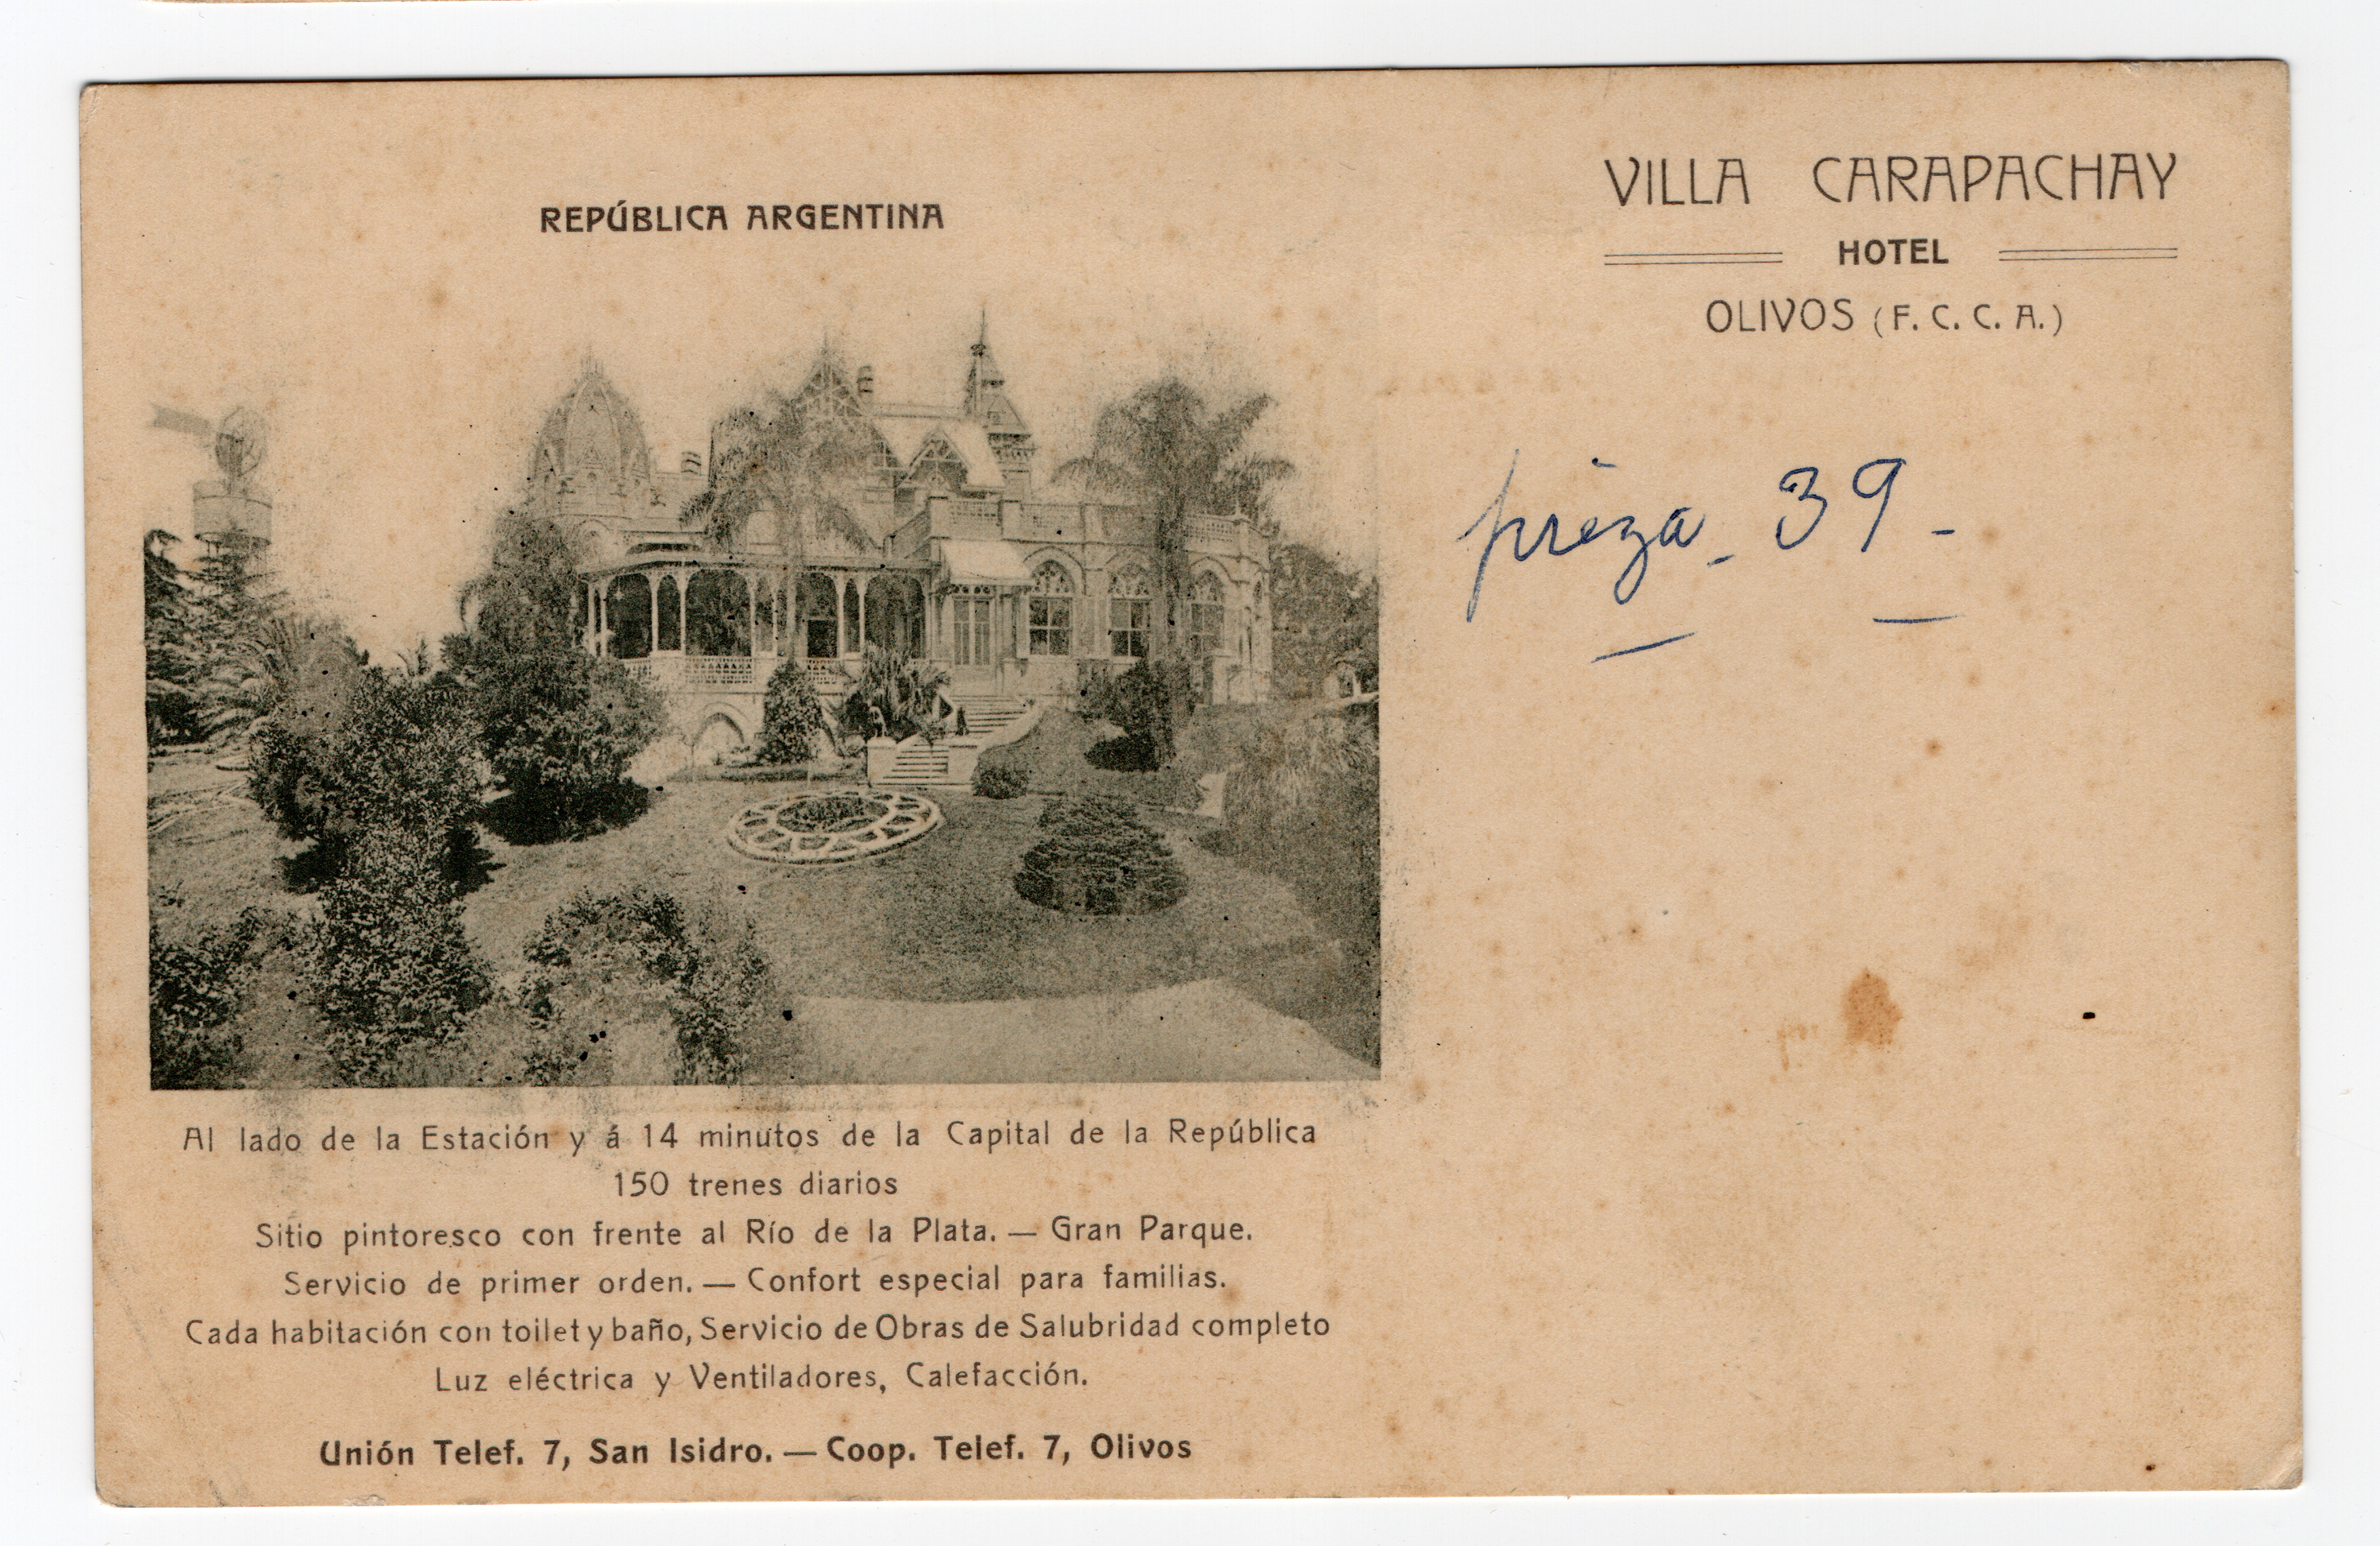 Hotel “Villa Carapachay”, Olivos.